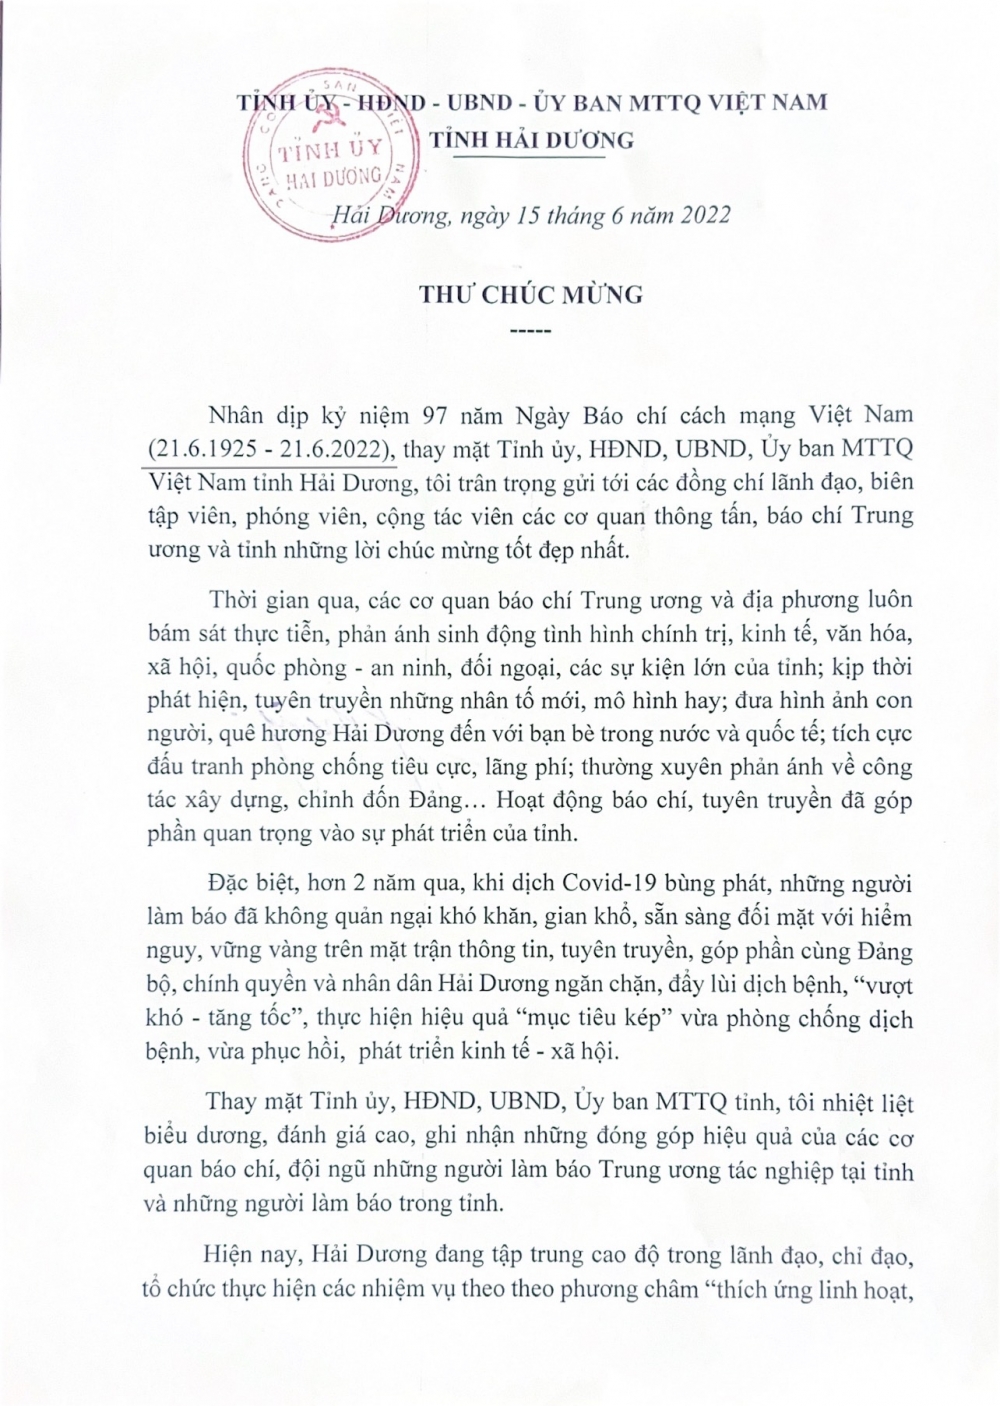 Bí thư Tỉnh ủy Hải Dương gửi thư chúc mừng nhân dịp kỷ niệm 97 năm Ngày Báo chí cách mạng Việt Nam